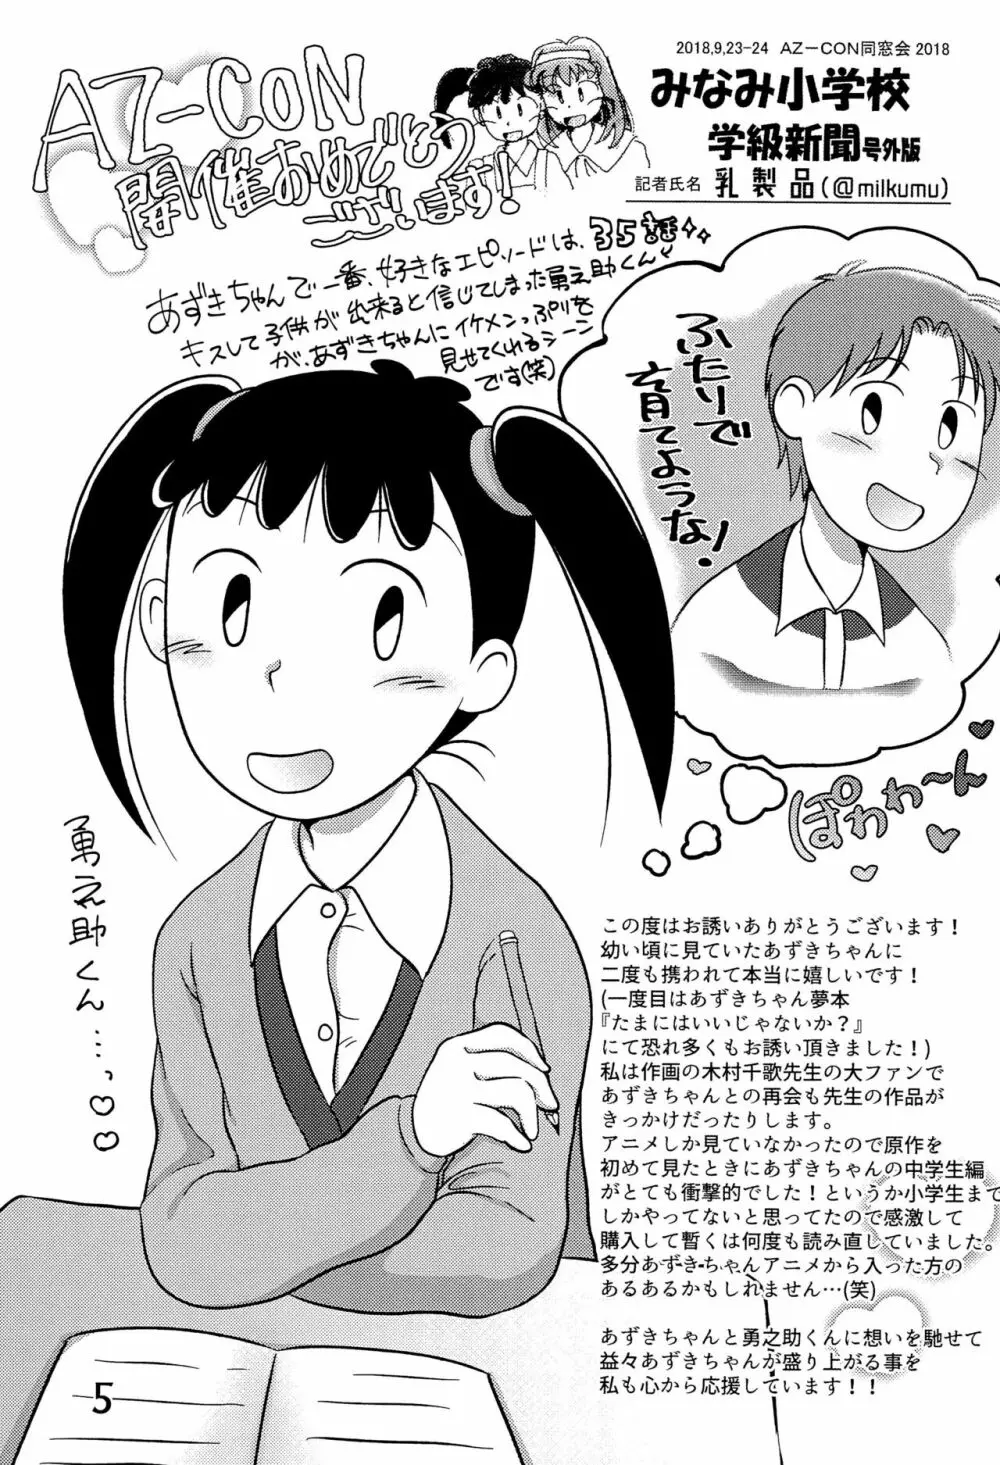 みなみ小学校学級新聞2018+号外版 5ページ